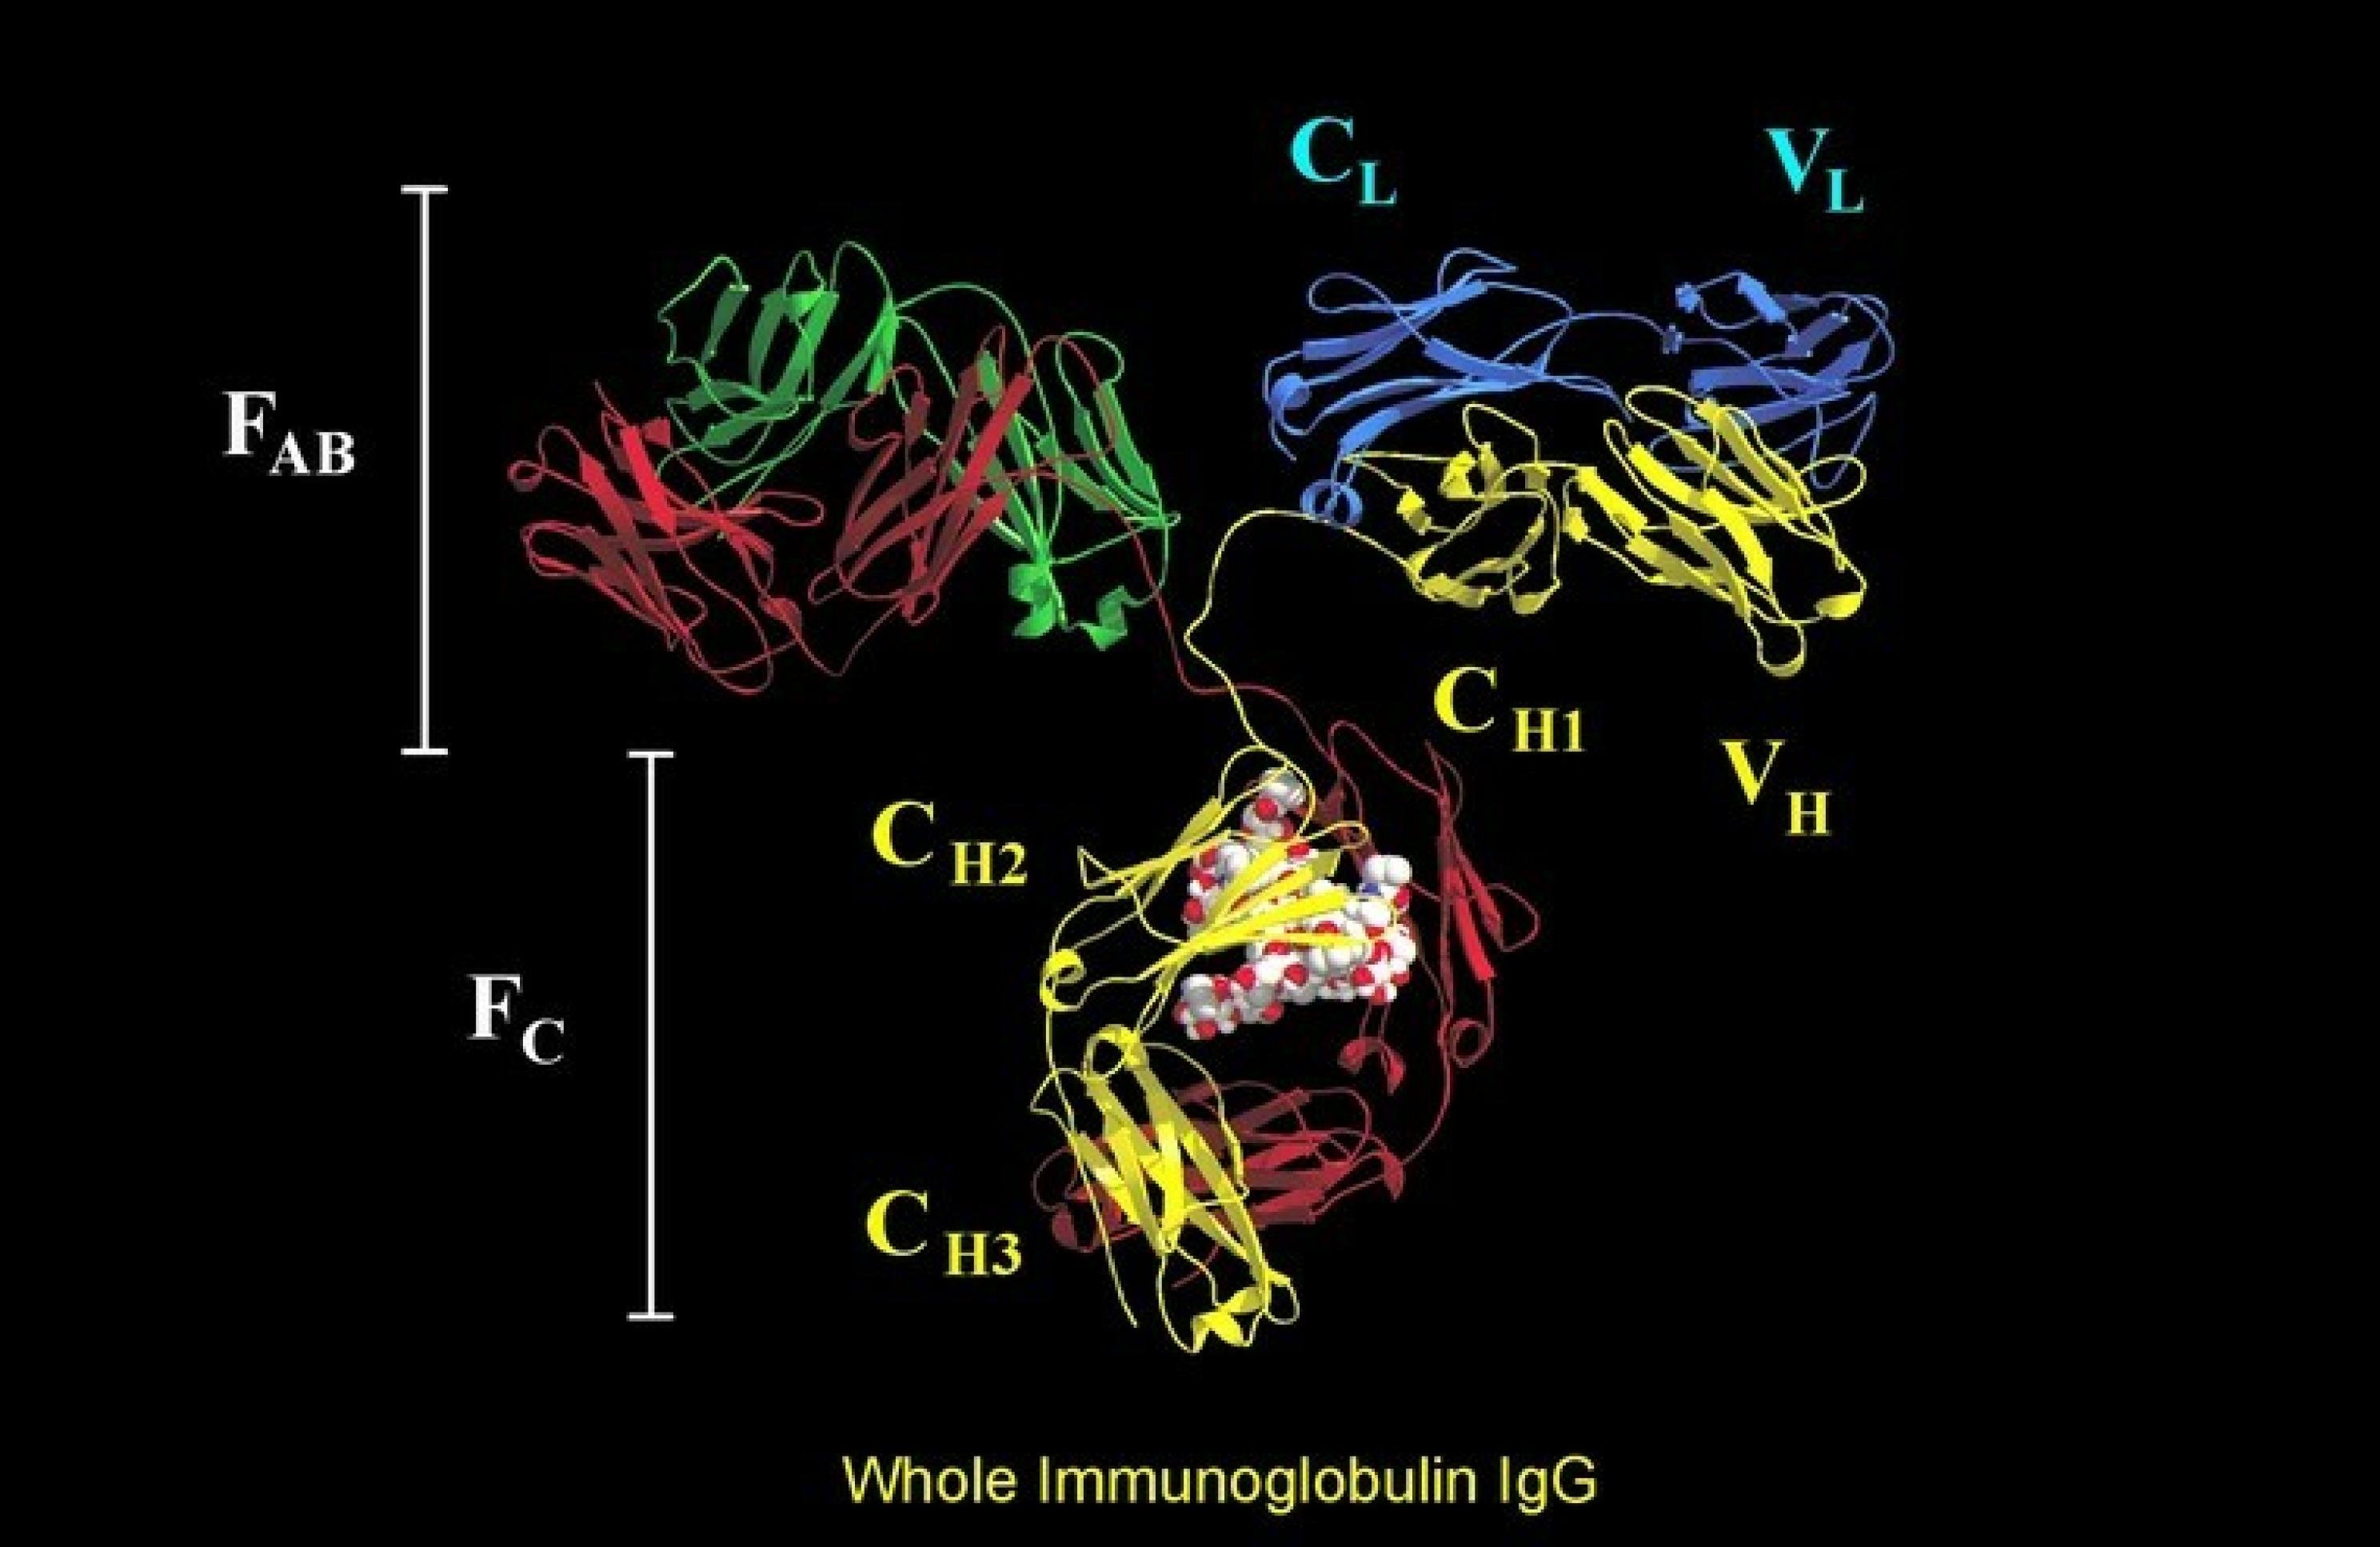 Modellhafte, bunte Darstellung eines IgG Antikörper Moleküls. Zu sehen sind die verschiedenen gefalteten Proteinstrukturen, die die Funktion der Antikörper ausmachen: die Bindung des Antigens und die Wechselwirkung mit Immunzellen.